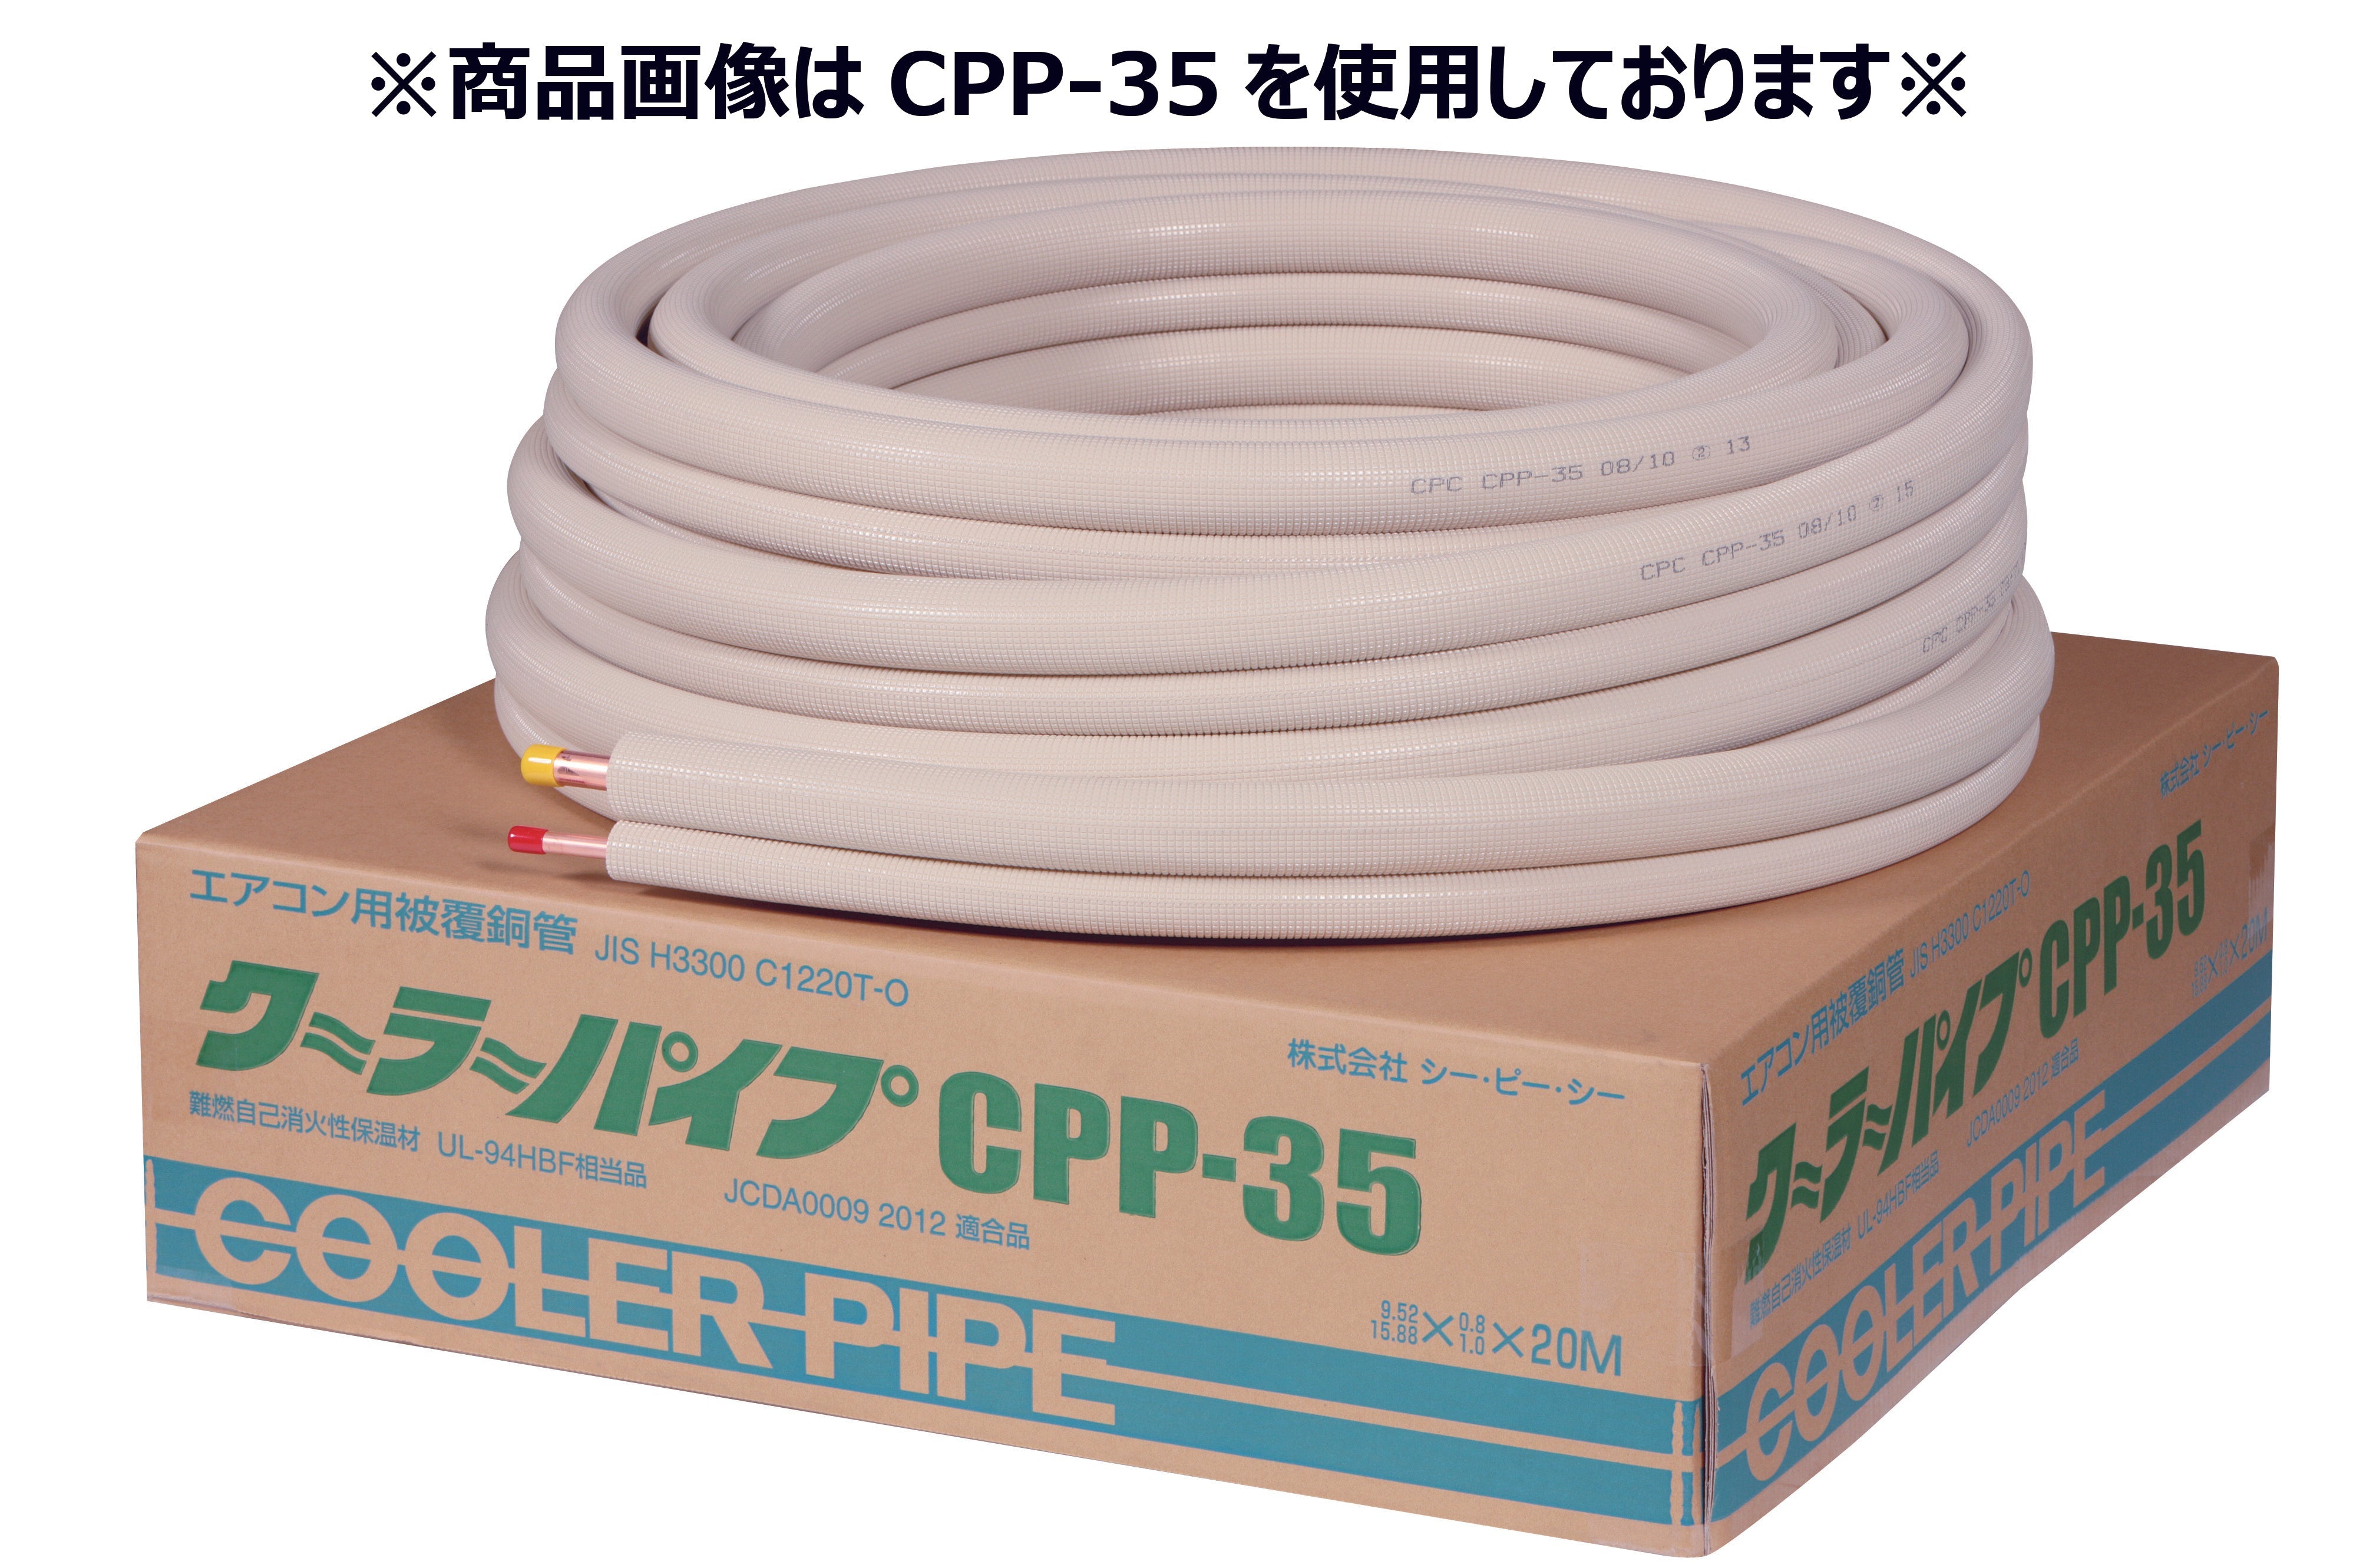 エアコン用冷媒被覆銅管 クーラーパイプCPP-23-10 ペアコイル2分(6.35